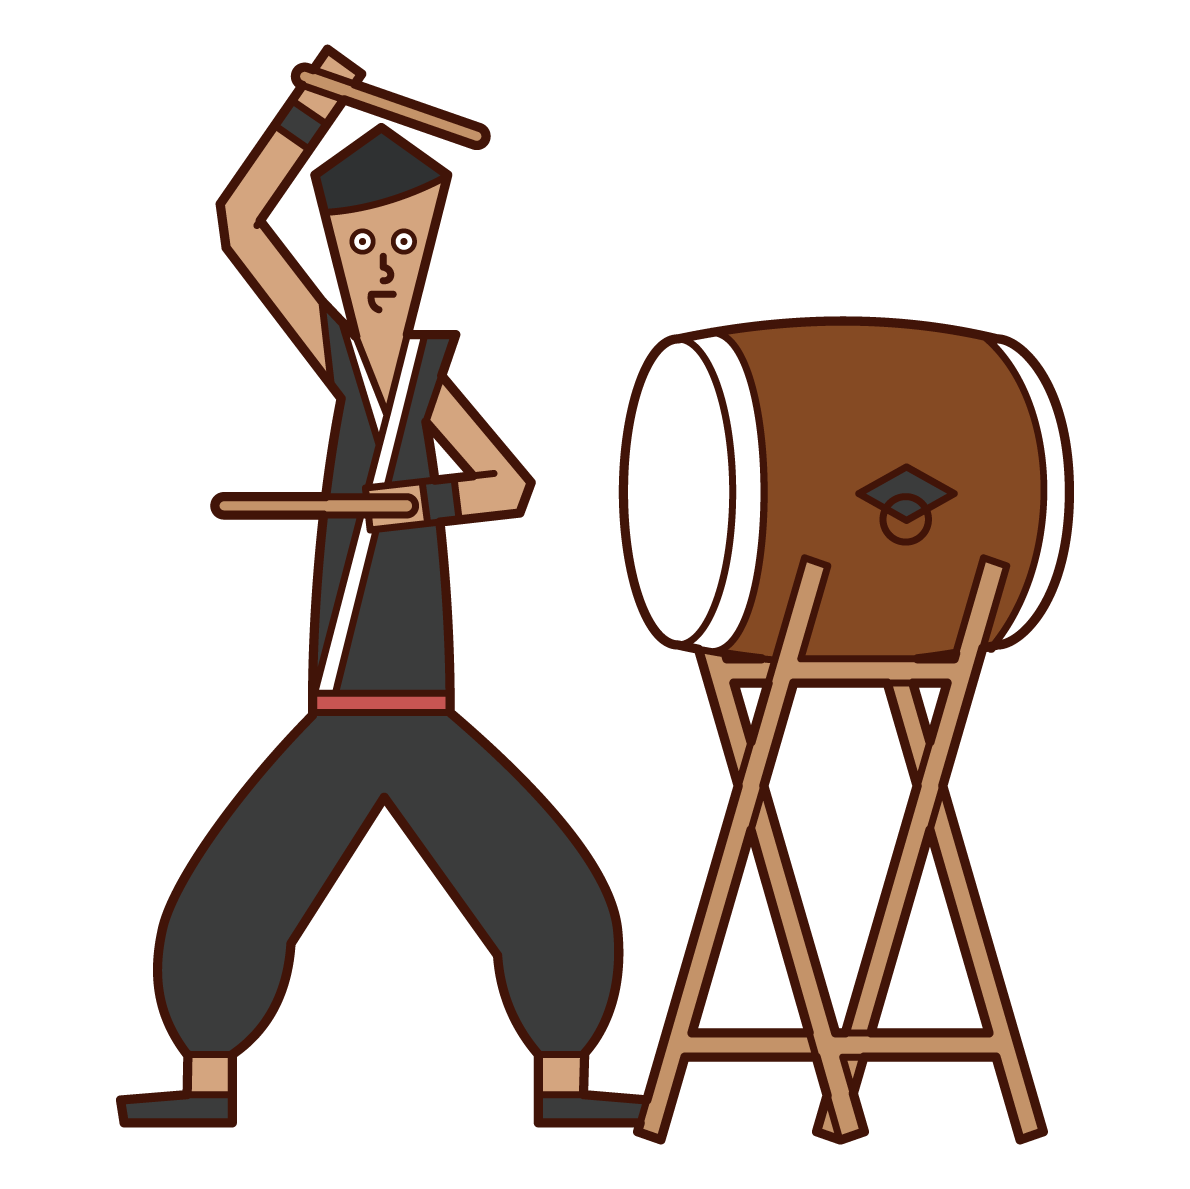 일본 드럼을 연주하는 사람 (남성)의 그림